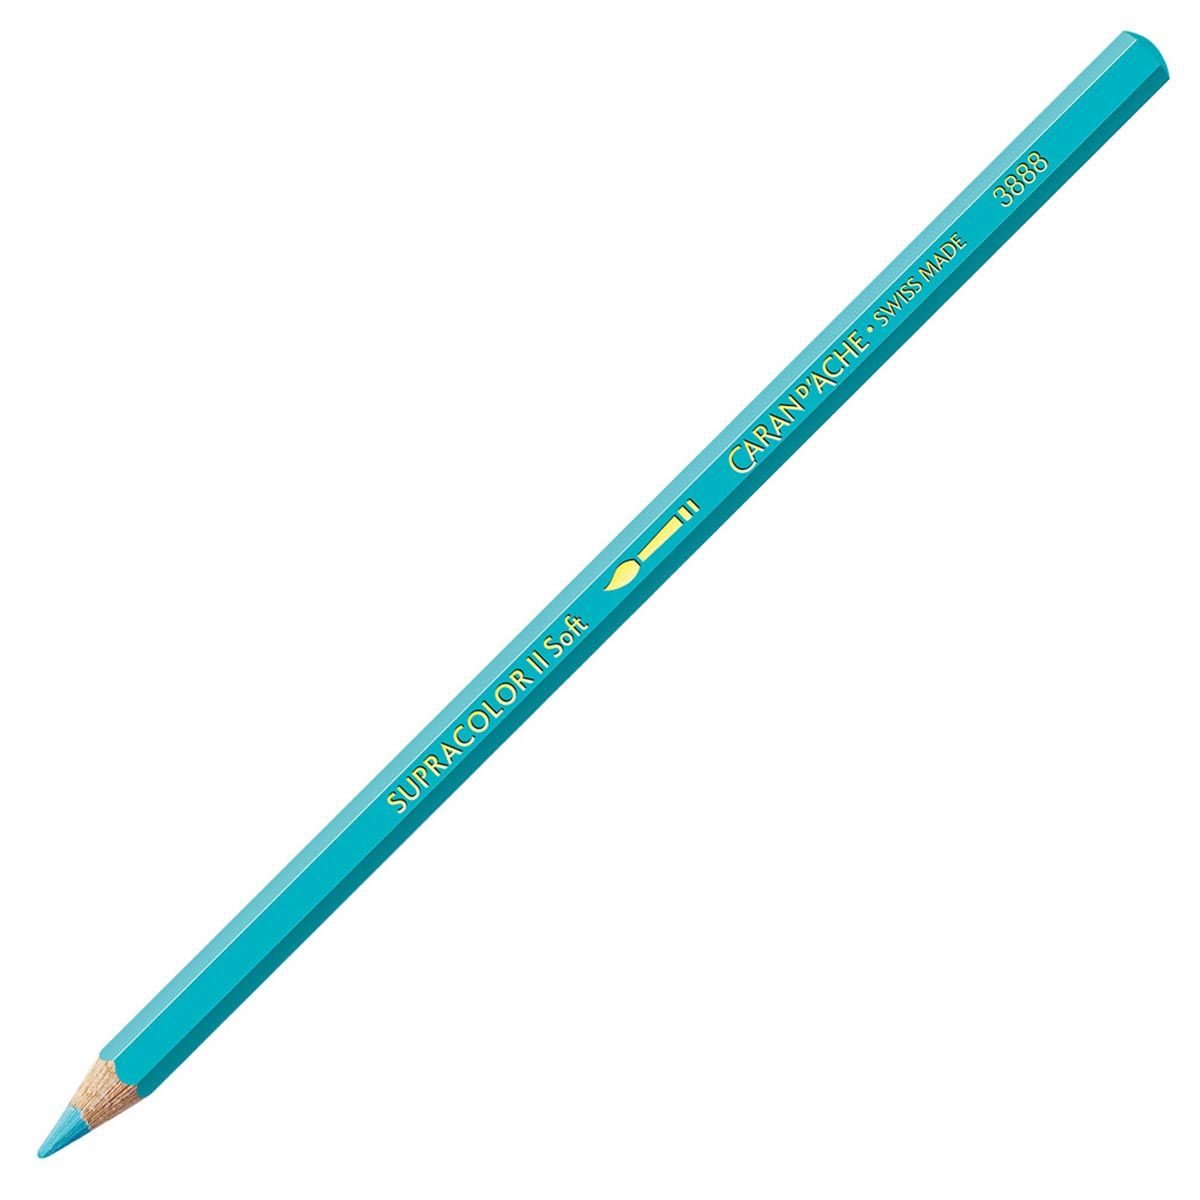 Caran d'Ache Supracolor ll Soft Aquarelle Pencil - Turquoise Blue 171